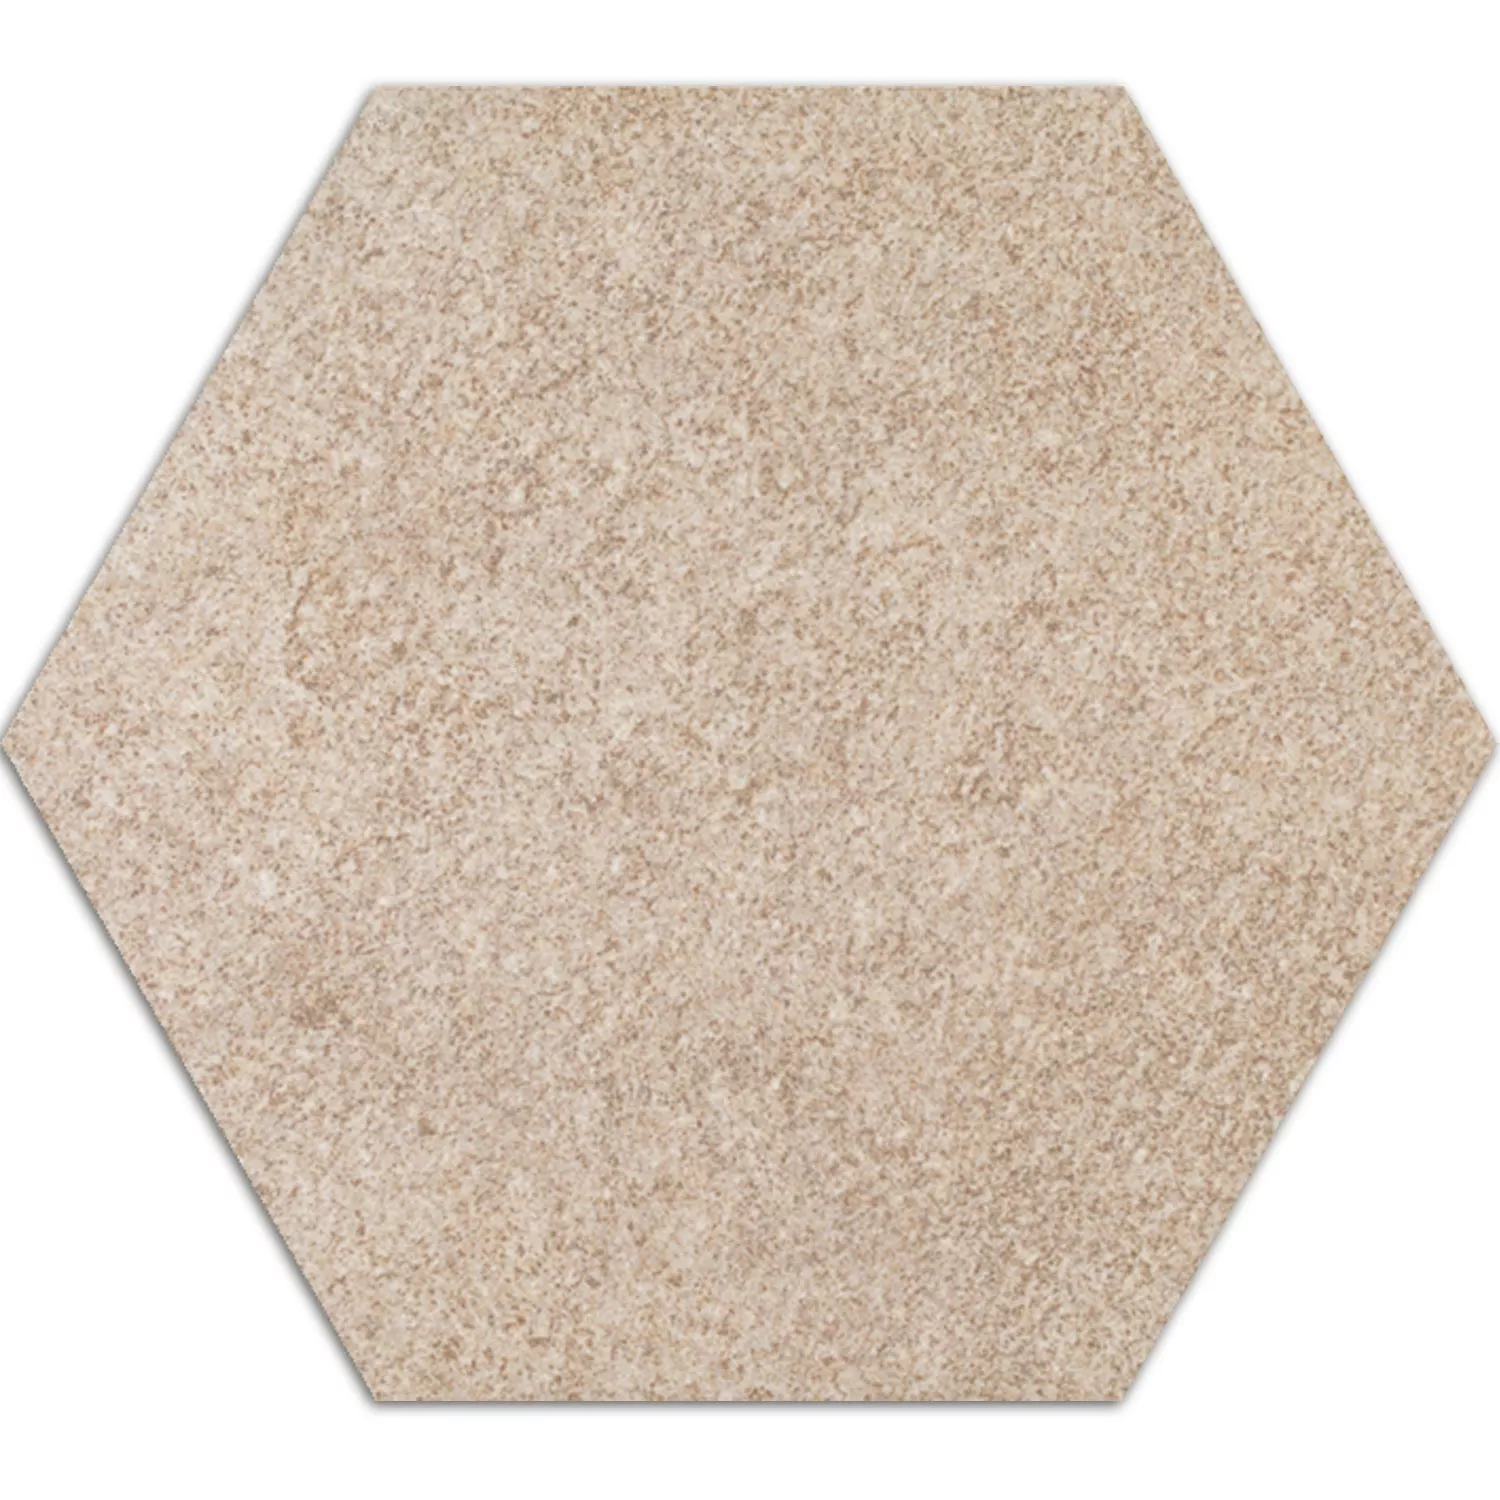 Cement Tiles Optic Hexagon Floor Tiles Atlanta Beige